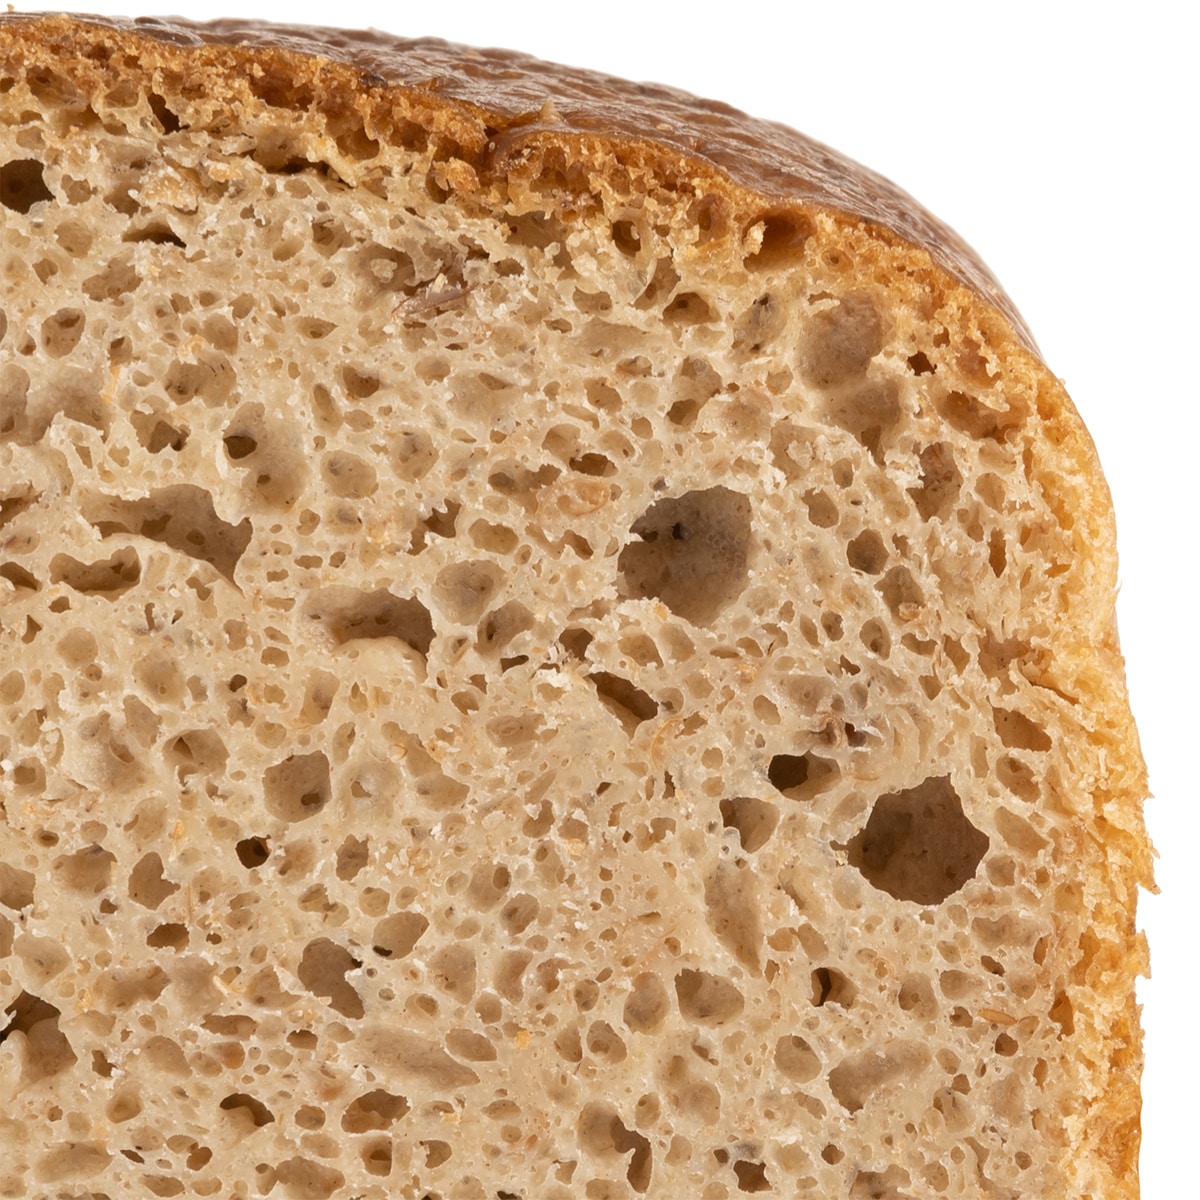 Chleb wojskowy pytlowy trwały 24 miesiące - 700 g